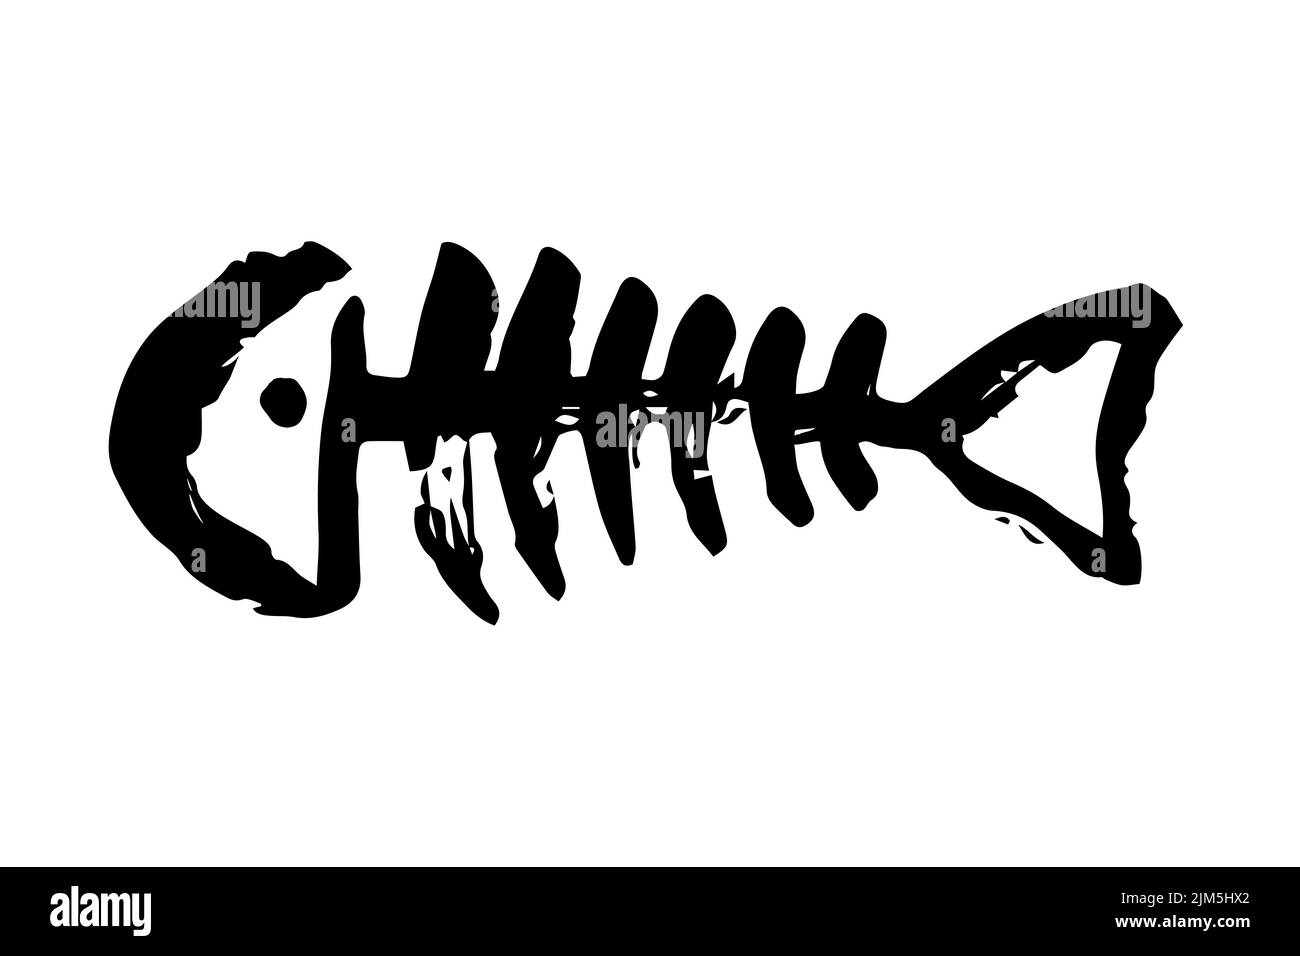 Кости рыбы собаке. Векторные кости рыбы китью. Рыба игла кости. Бренд одежды скелет рыбы. Полка скелет рыбы.